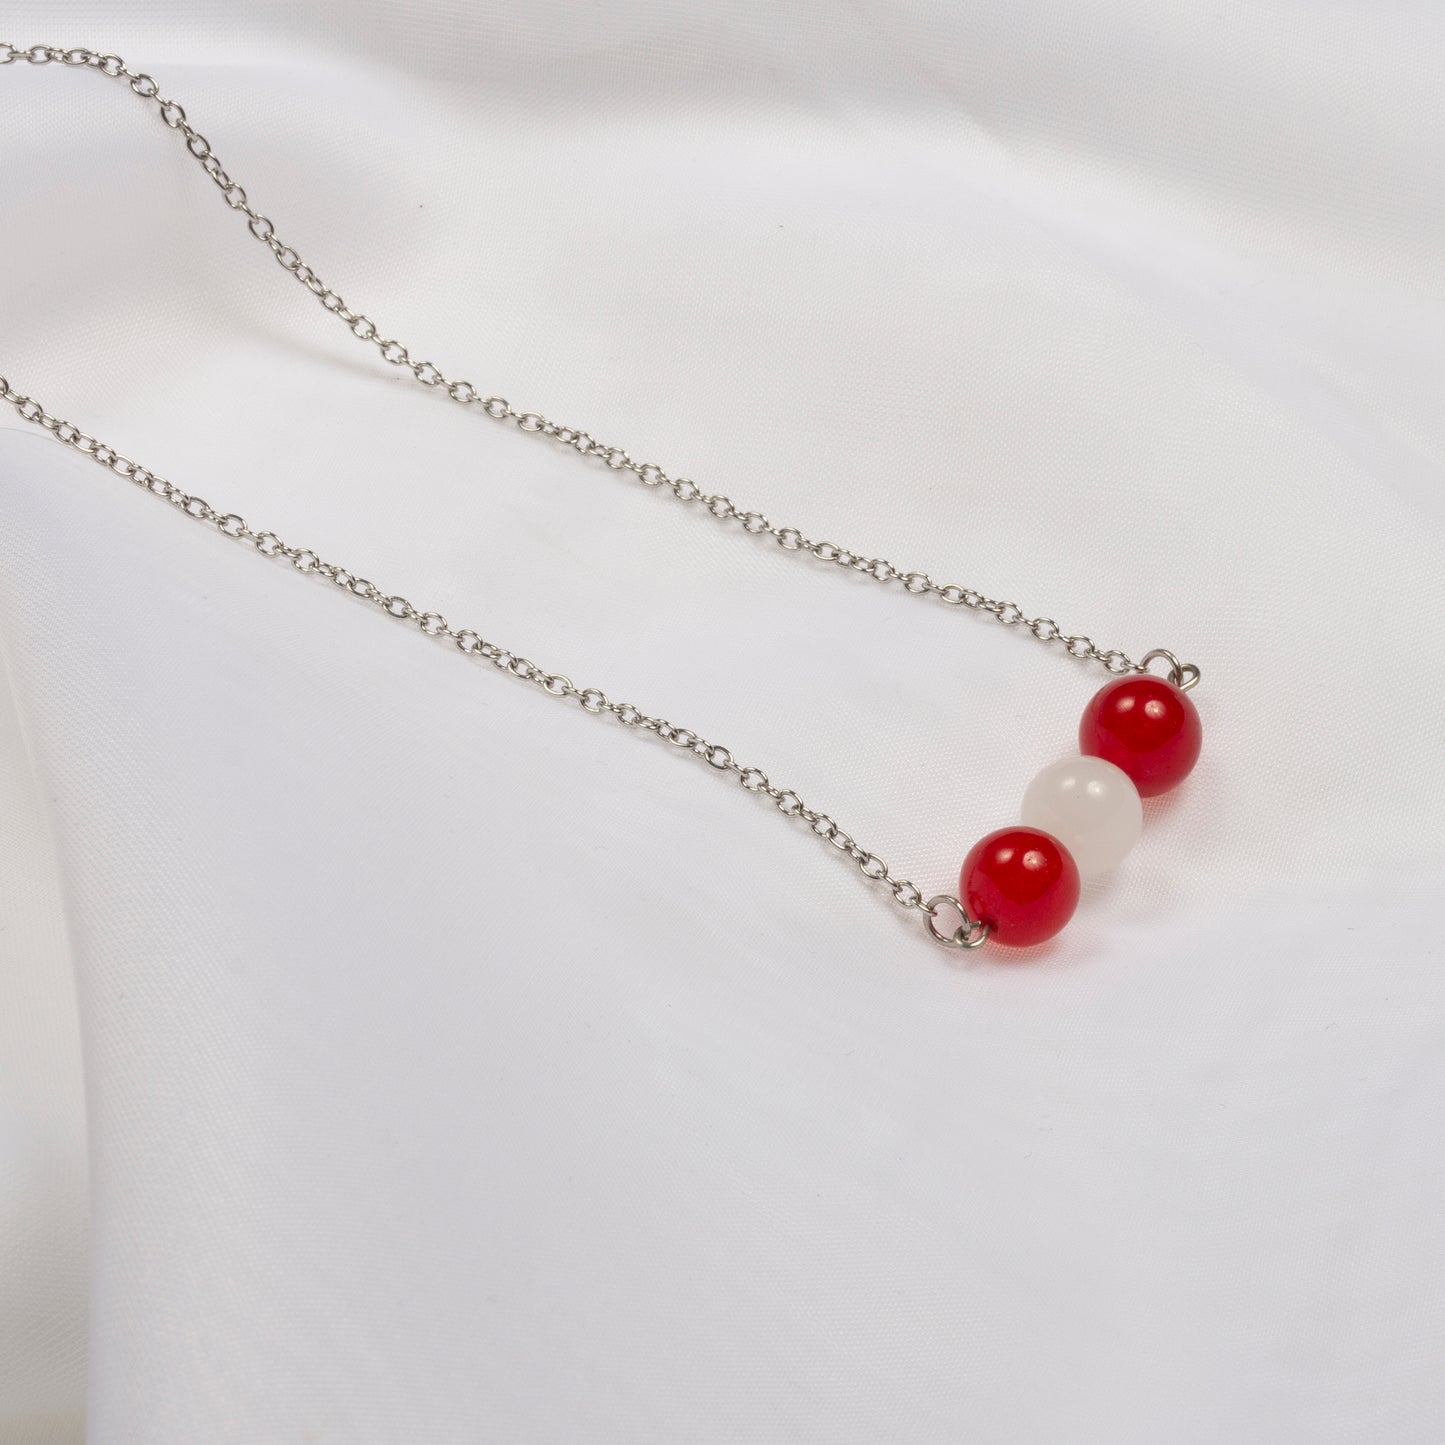 Joli collier composé de pierres fines jade rouge et jade blanc, sur une chaîne en acier inoxydable sur fond blanc.